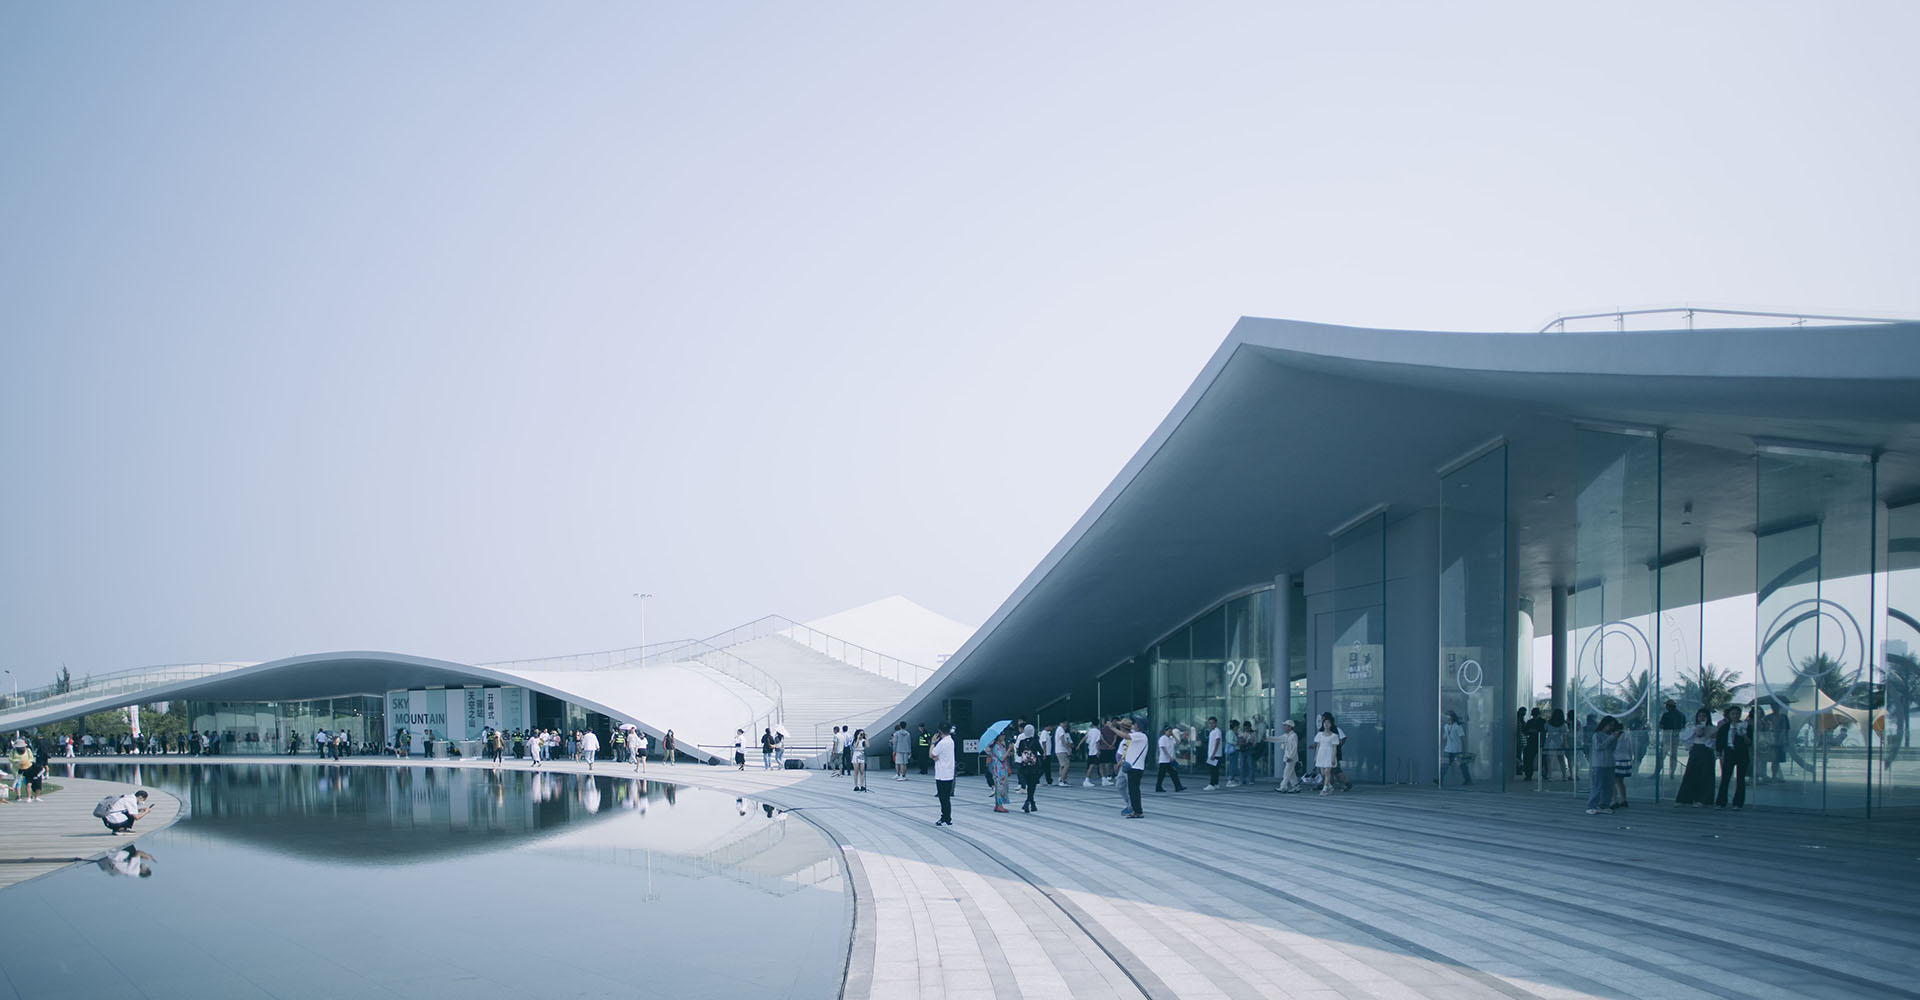 Архитектура "первобытного будущего" - в Китае построен масштабный павильон "Небесная гора"